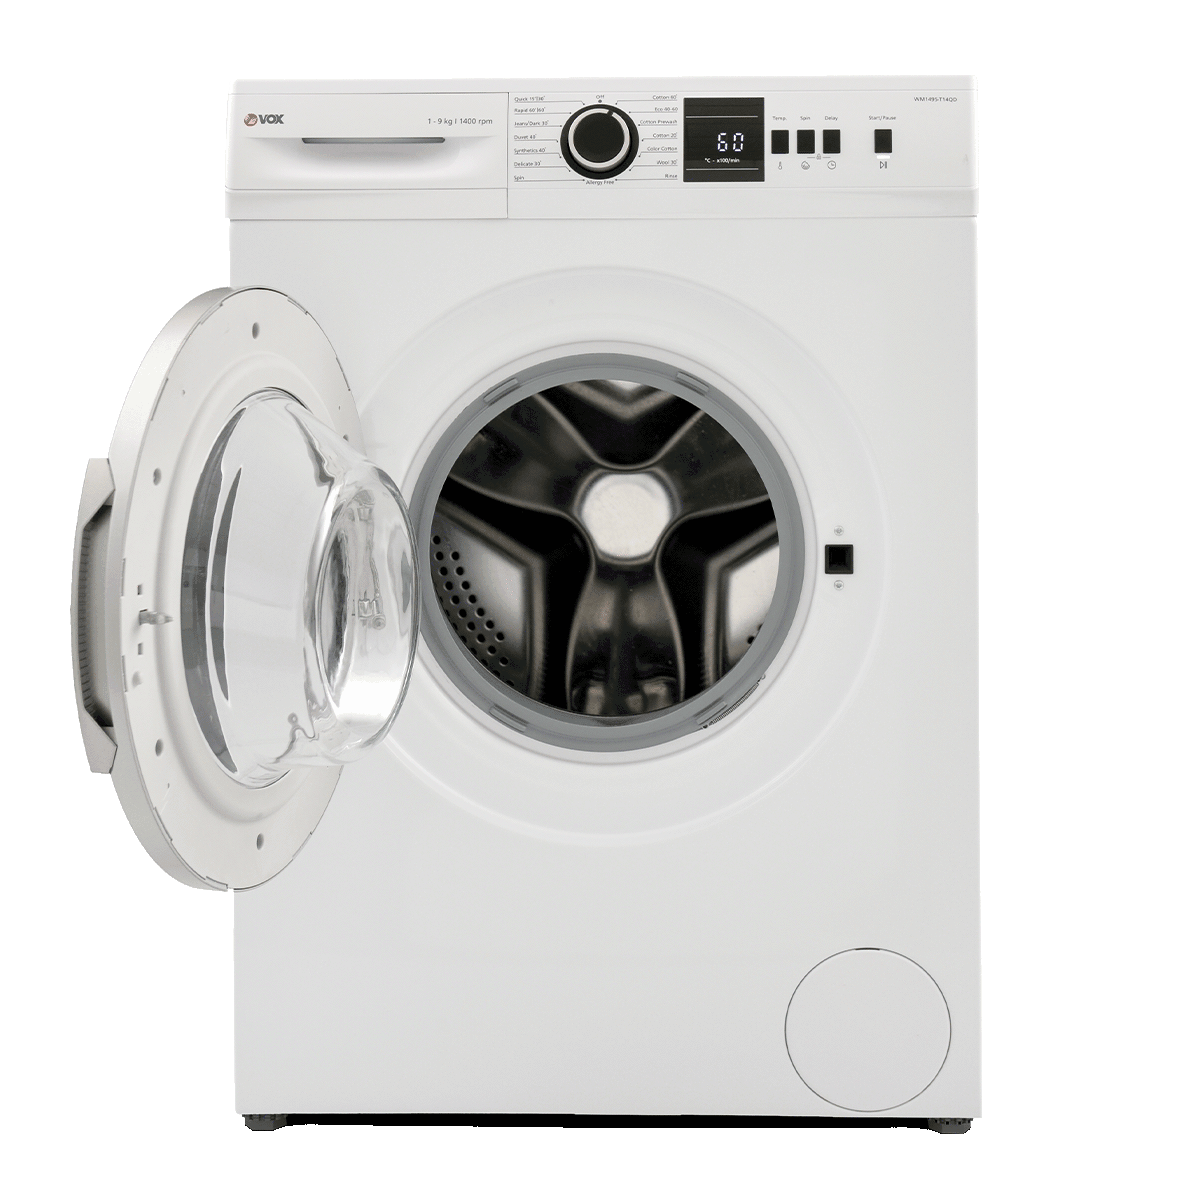 Washing machine WM1495-T14QD 